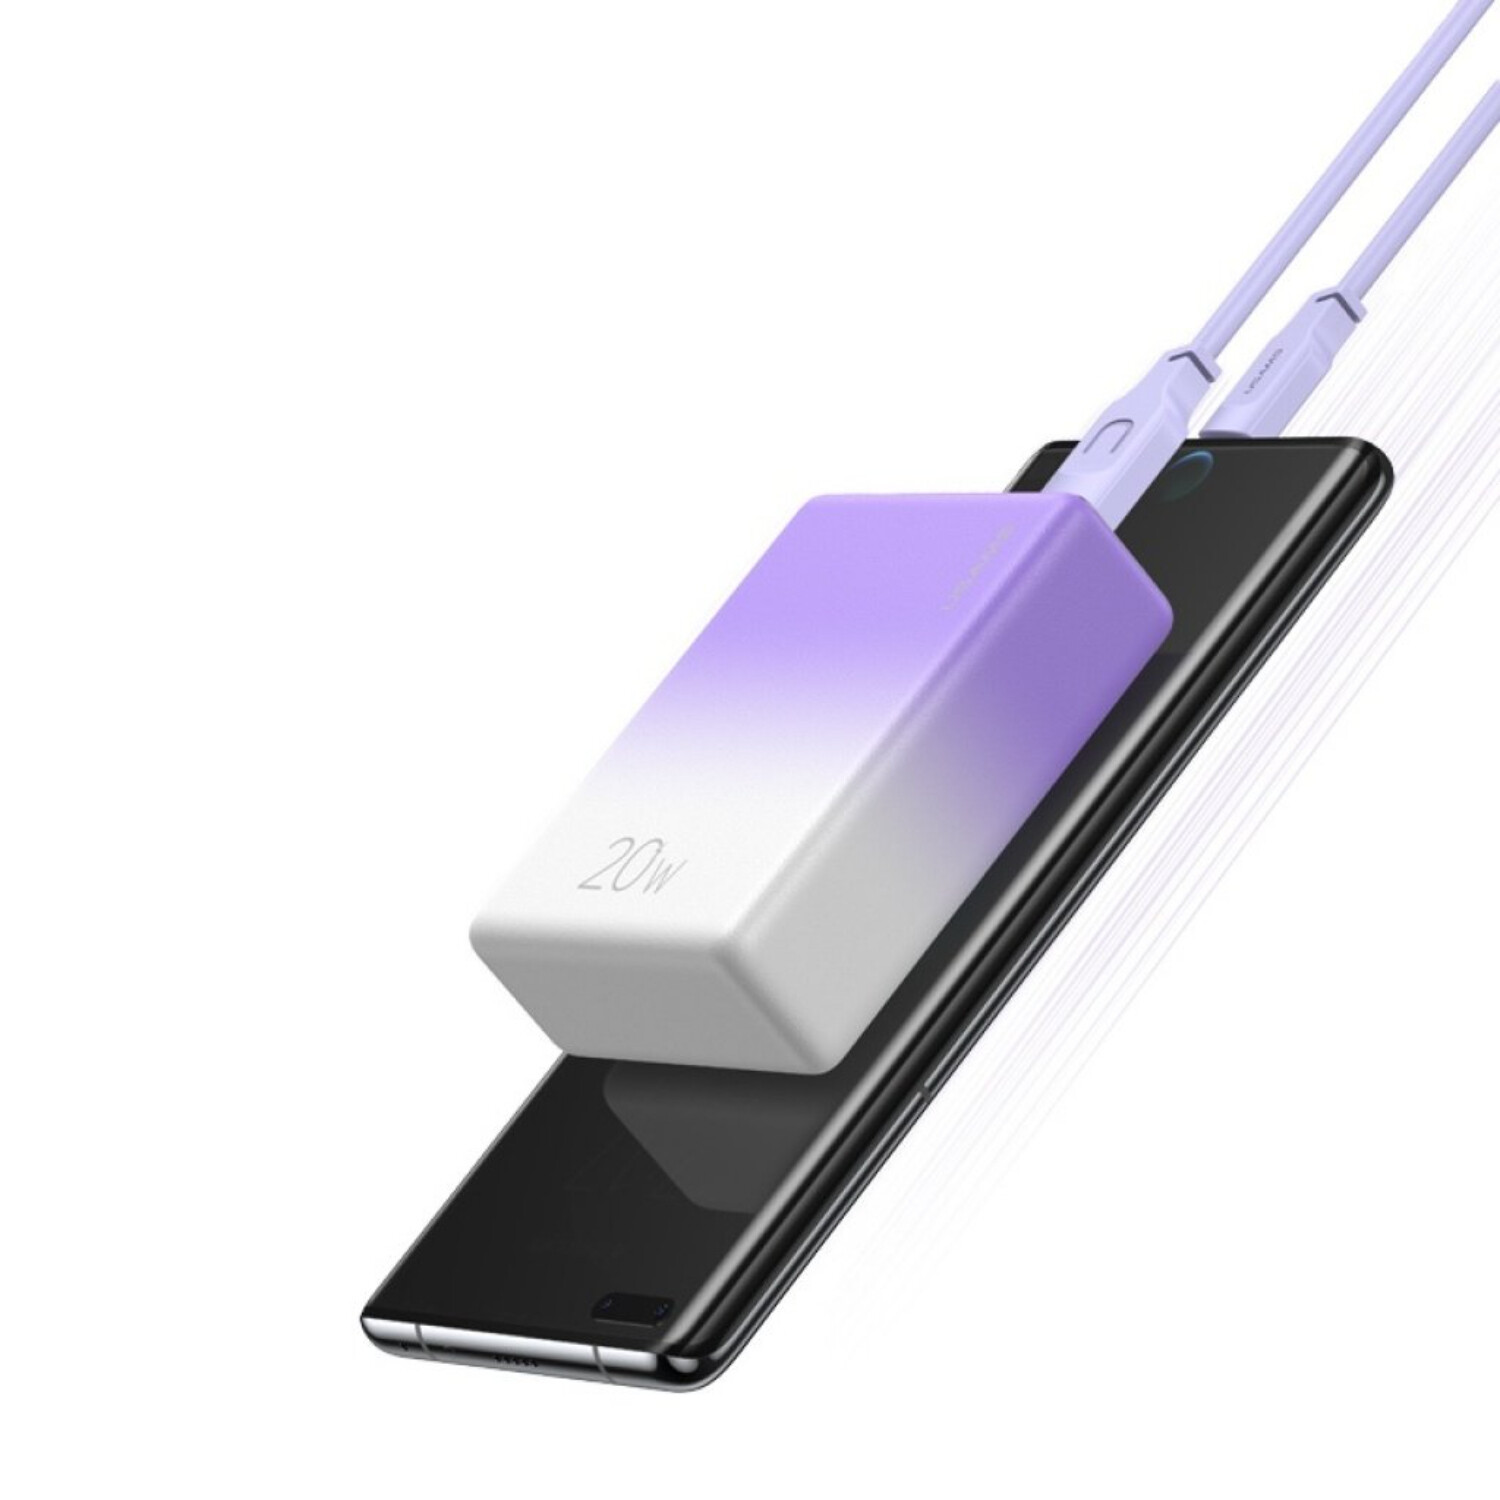 Cargador Portatil Power Bank Emergencia 1000mah iPhone - Variante Color  Rosa — Atrix